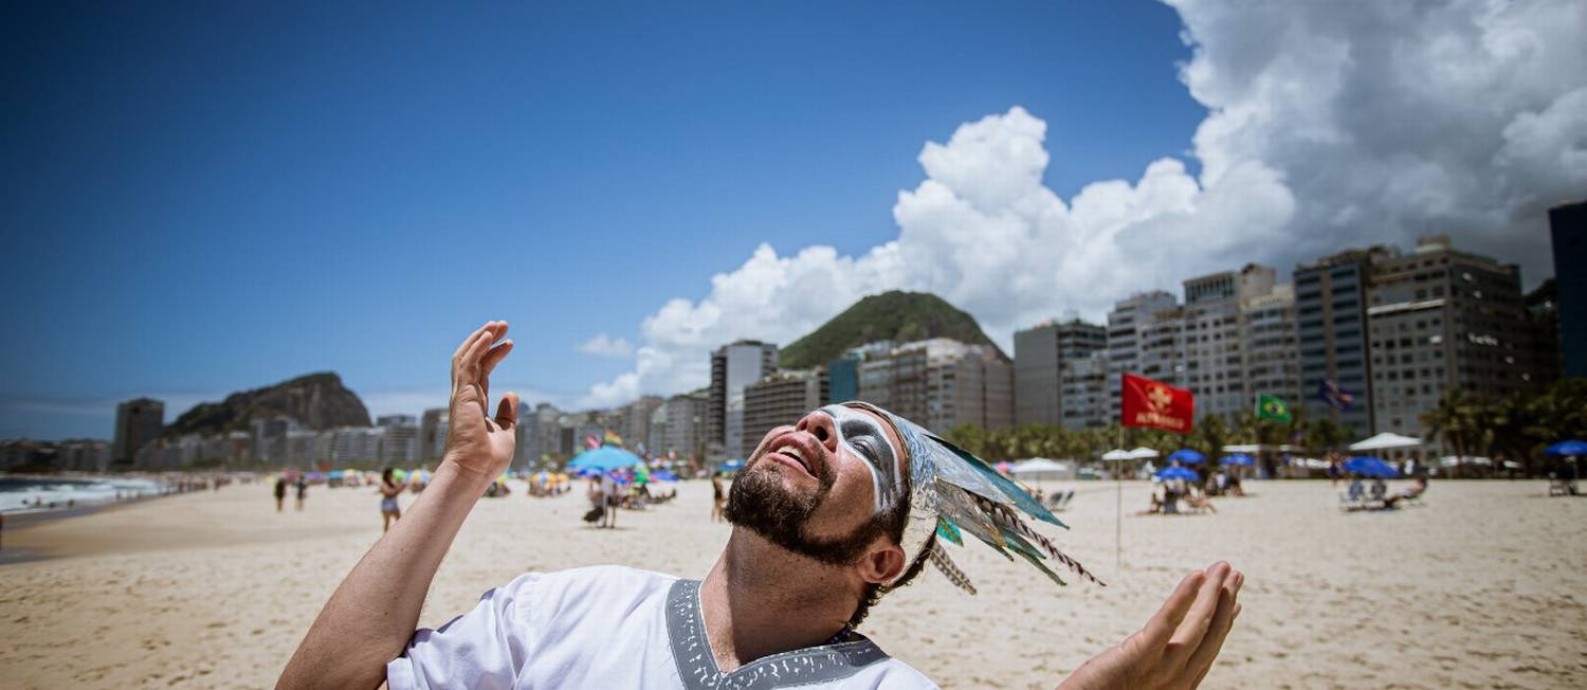 DJ MAM, responsável pela programação musical da virada, passeia na orla de Copacabana Foto: Hermes de Paula / Agência O Globo